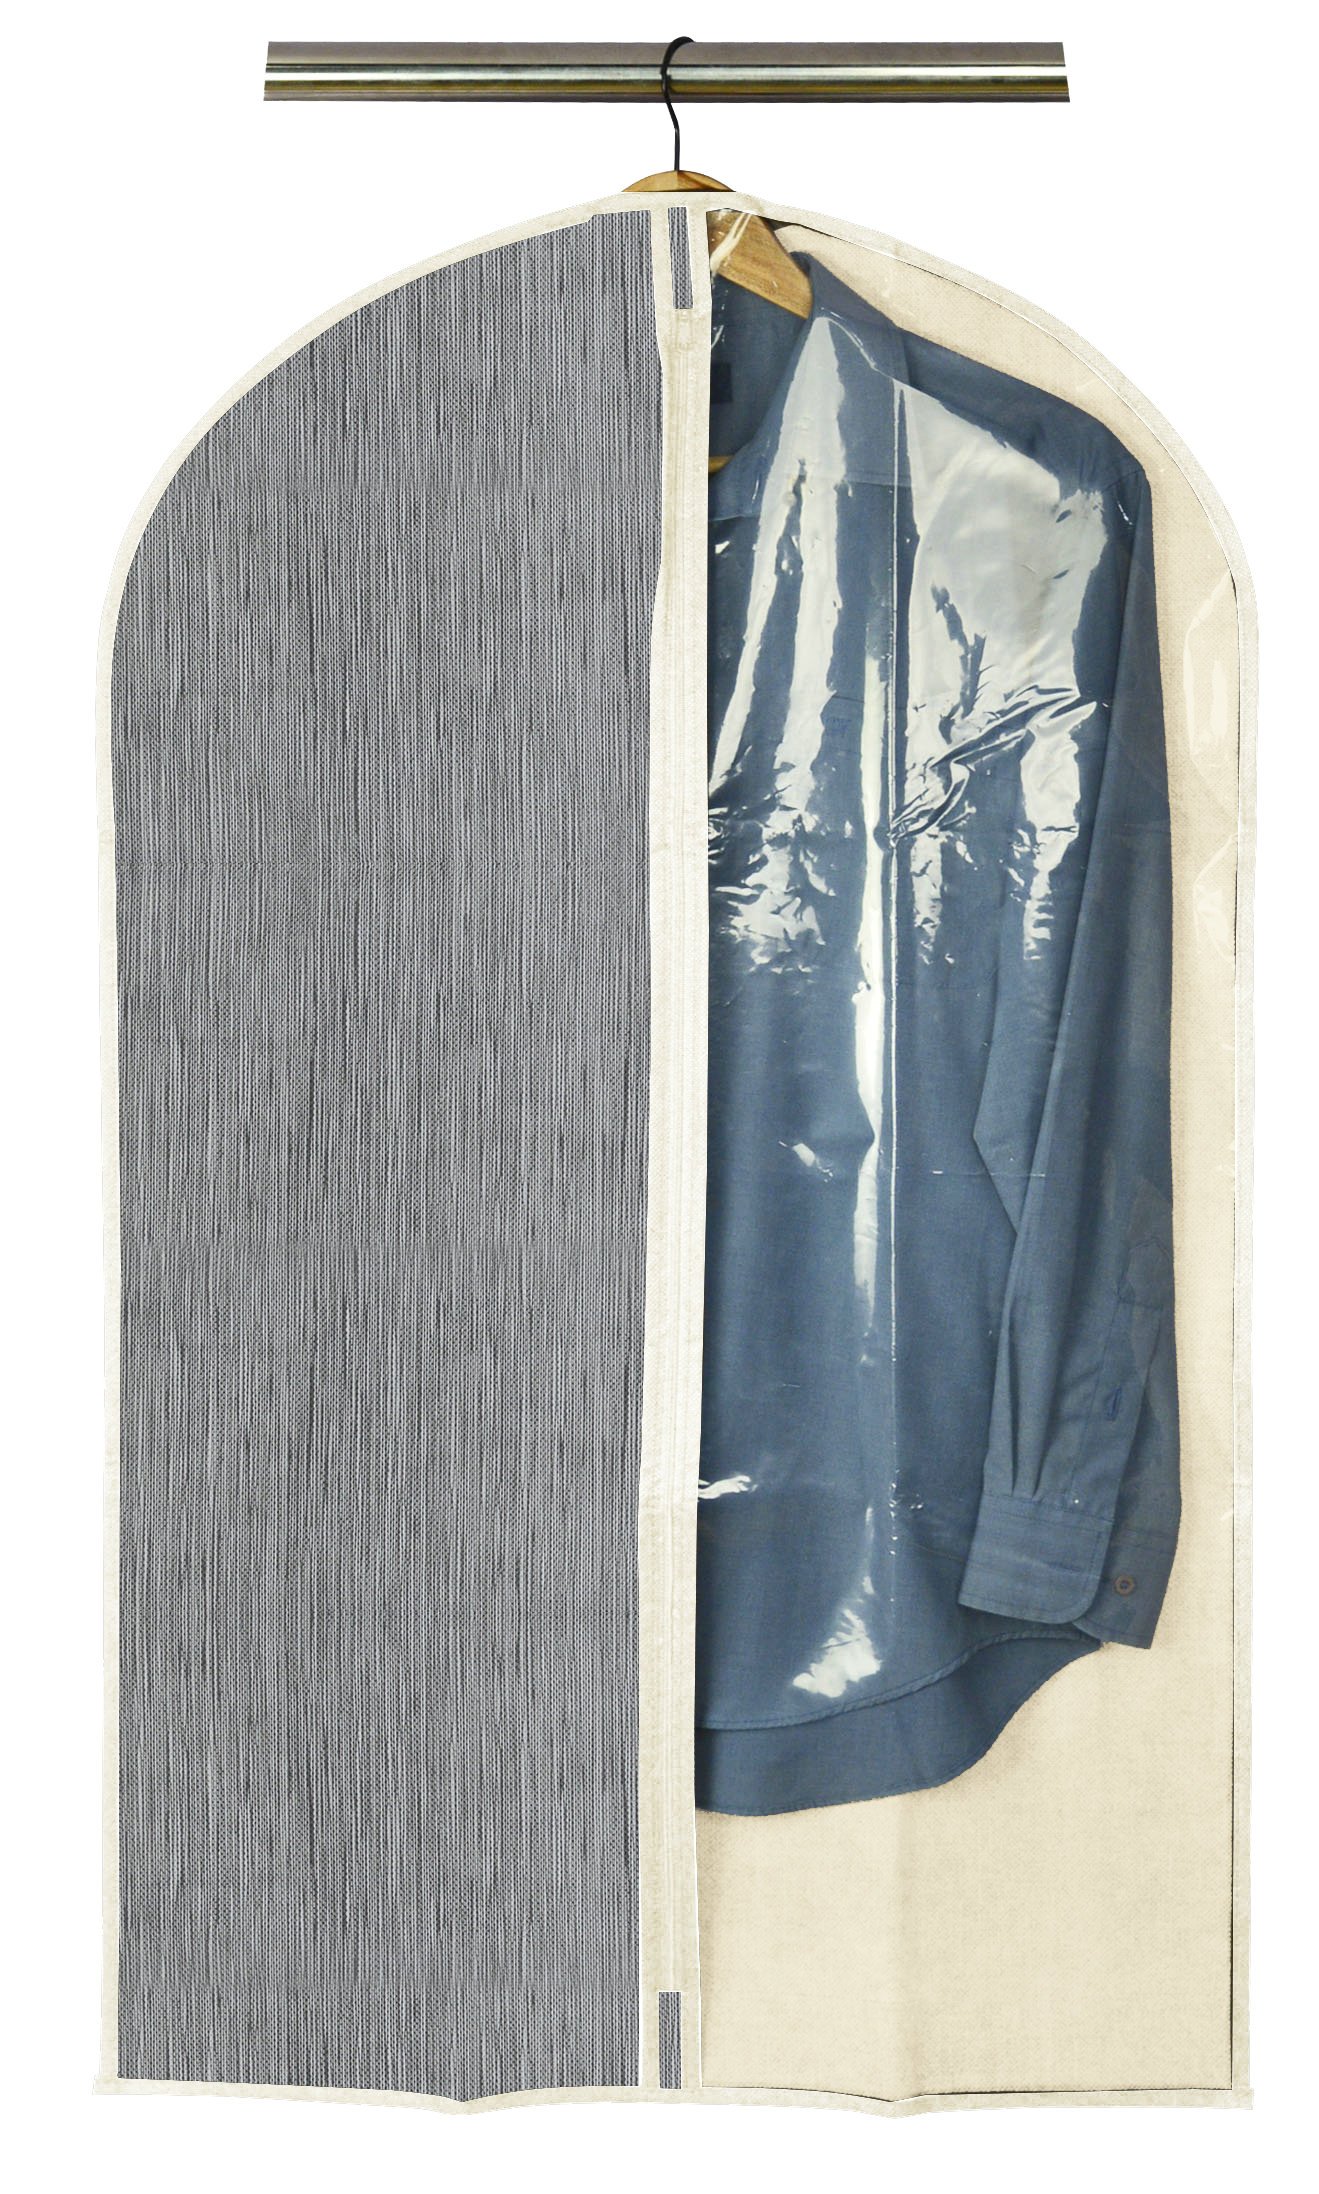 Чохол для одягу Handy Home, сірий, 60х100 см (ASH-08) - фото 1